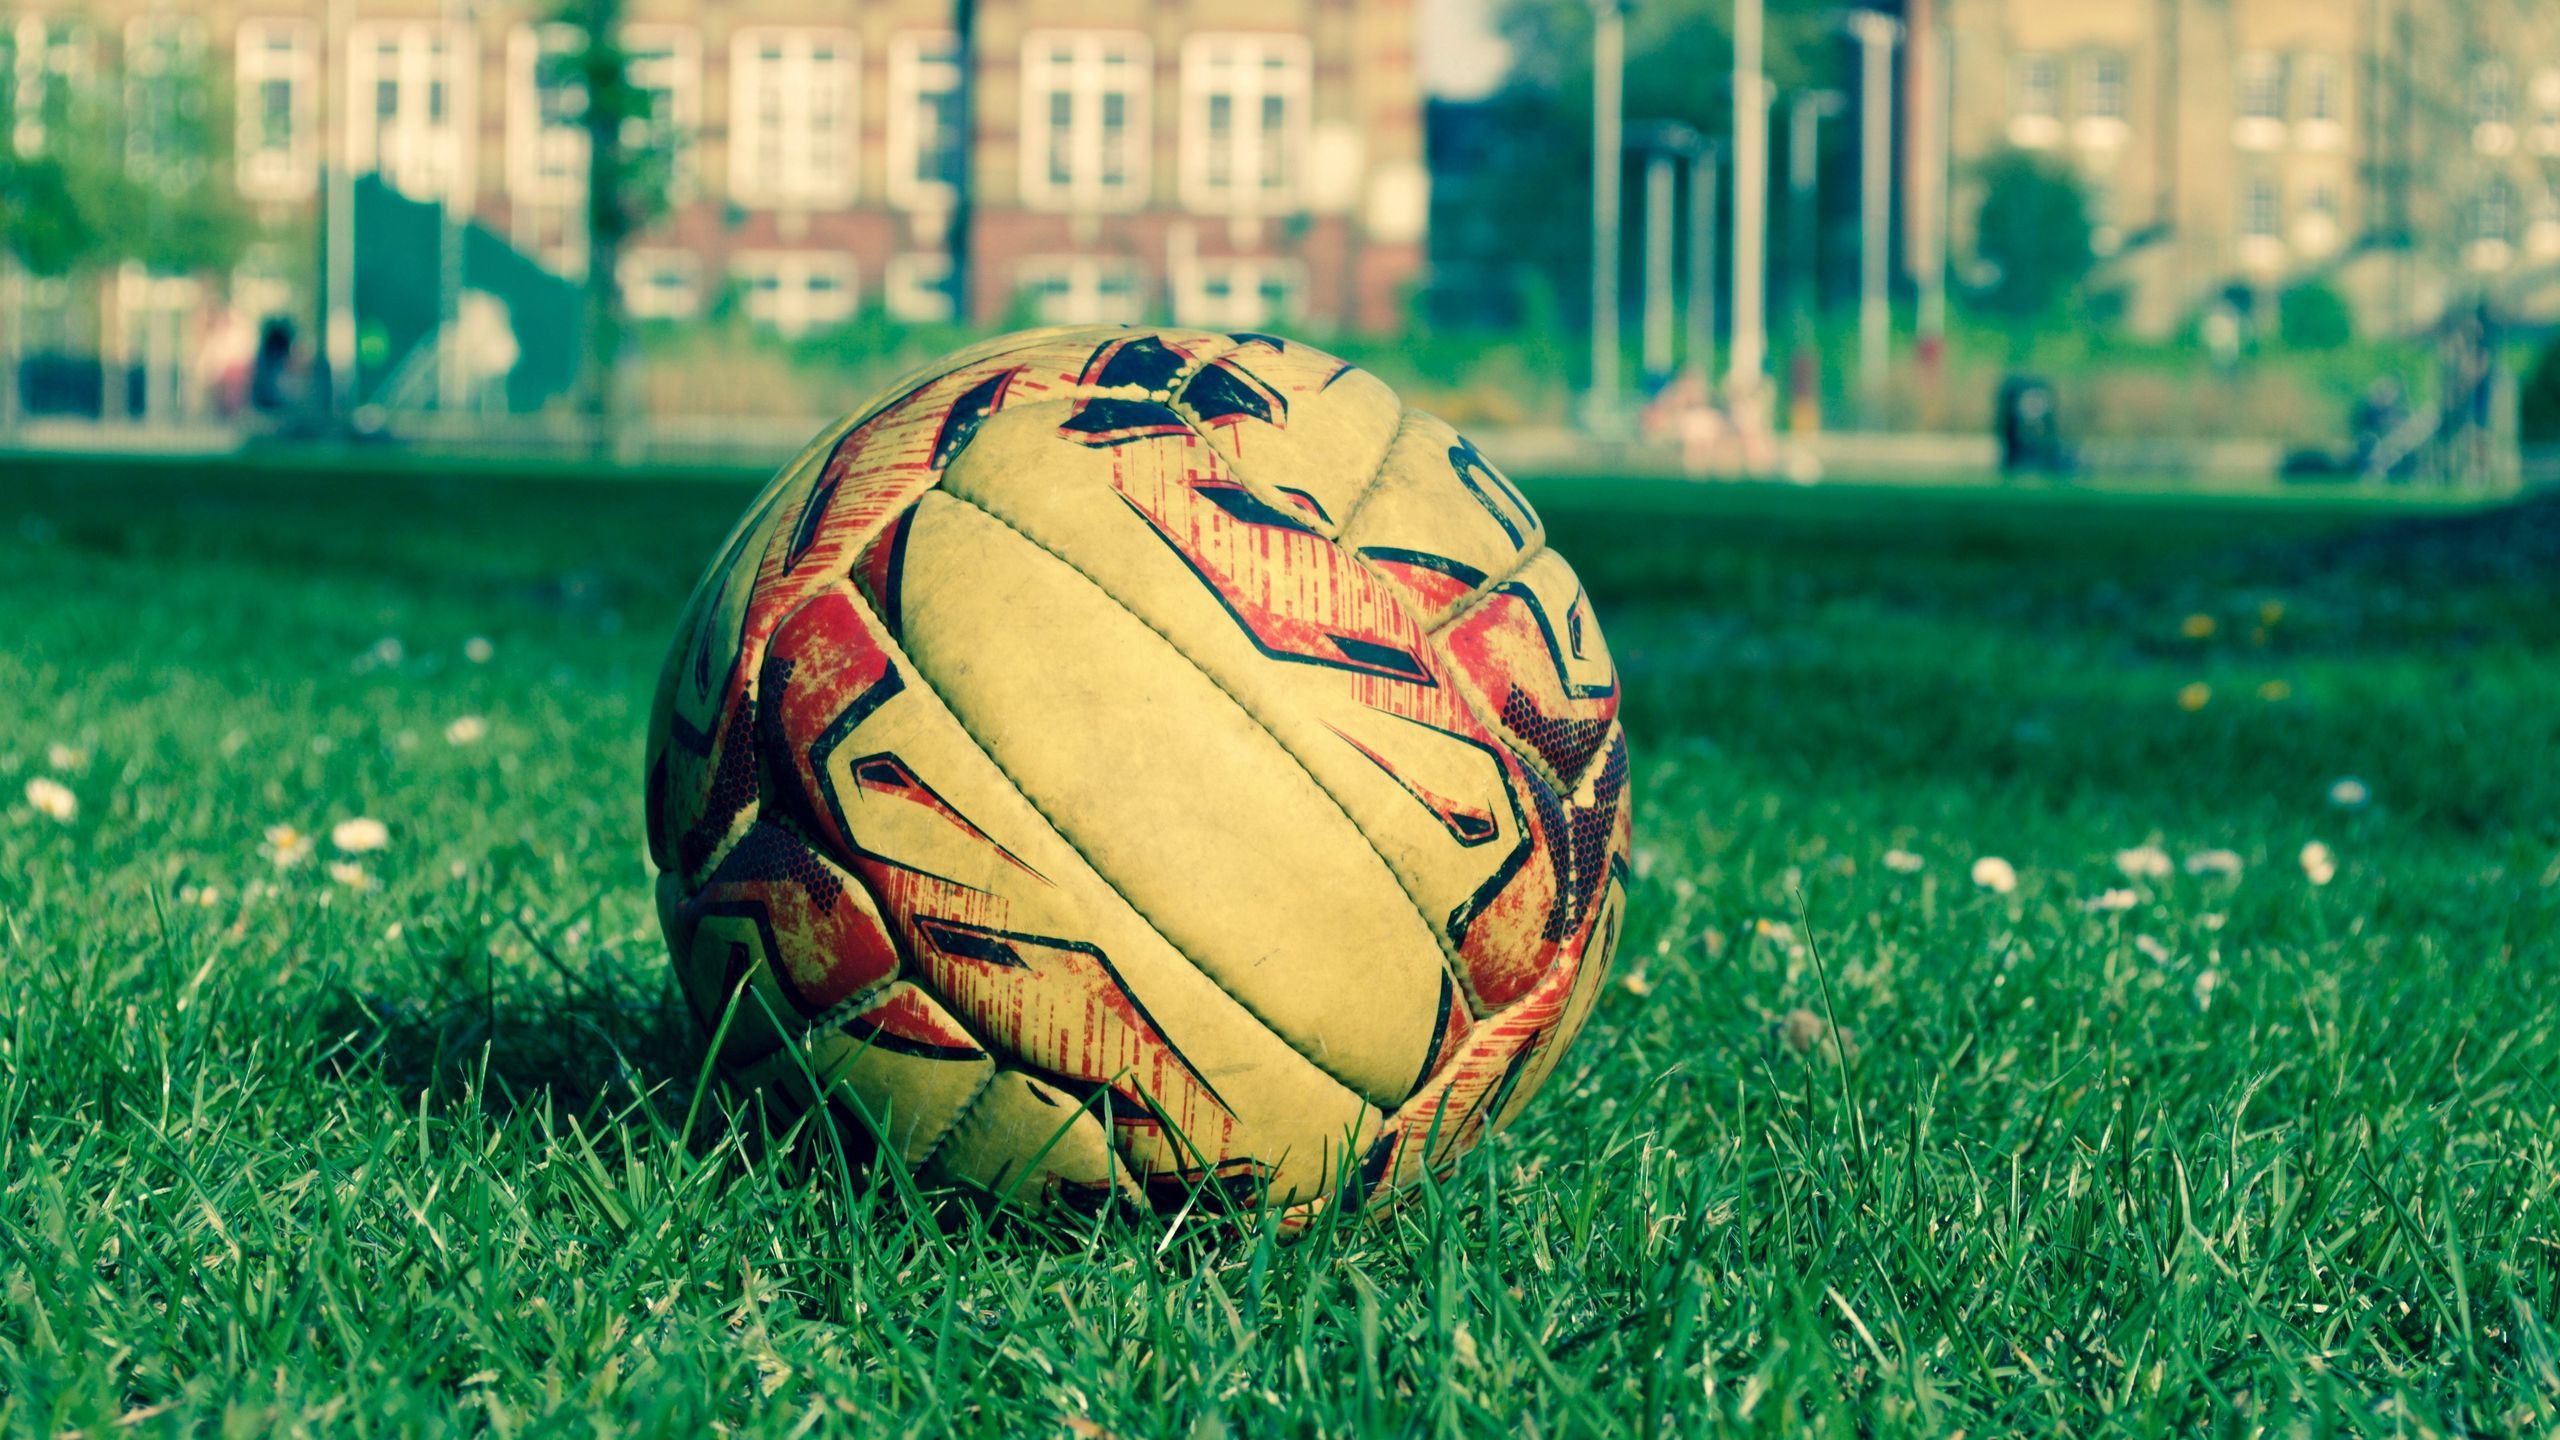 Download wallpaper 2560x1440 soccer ball, field, grass, lawn